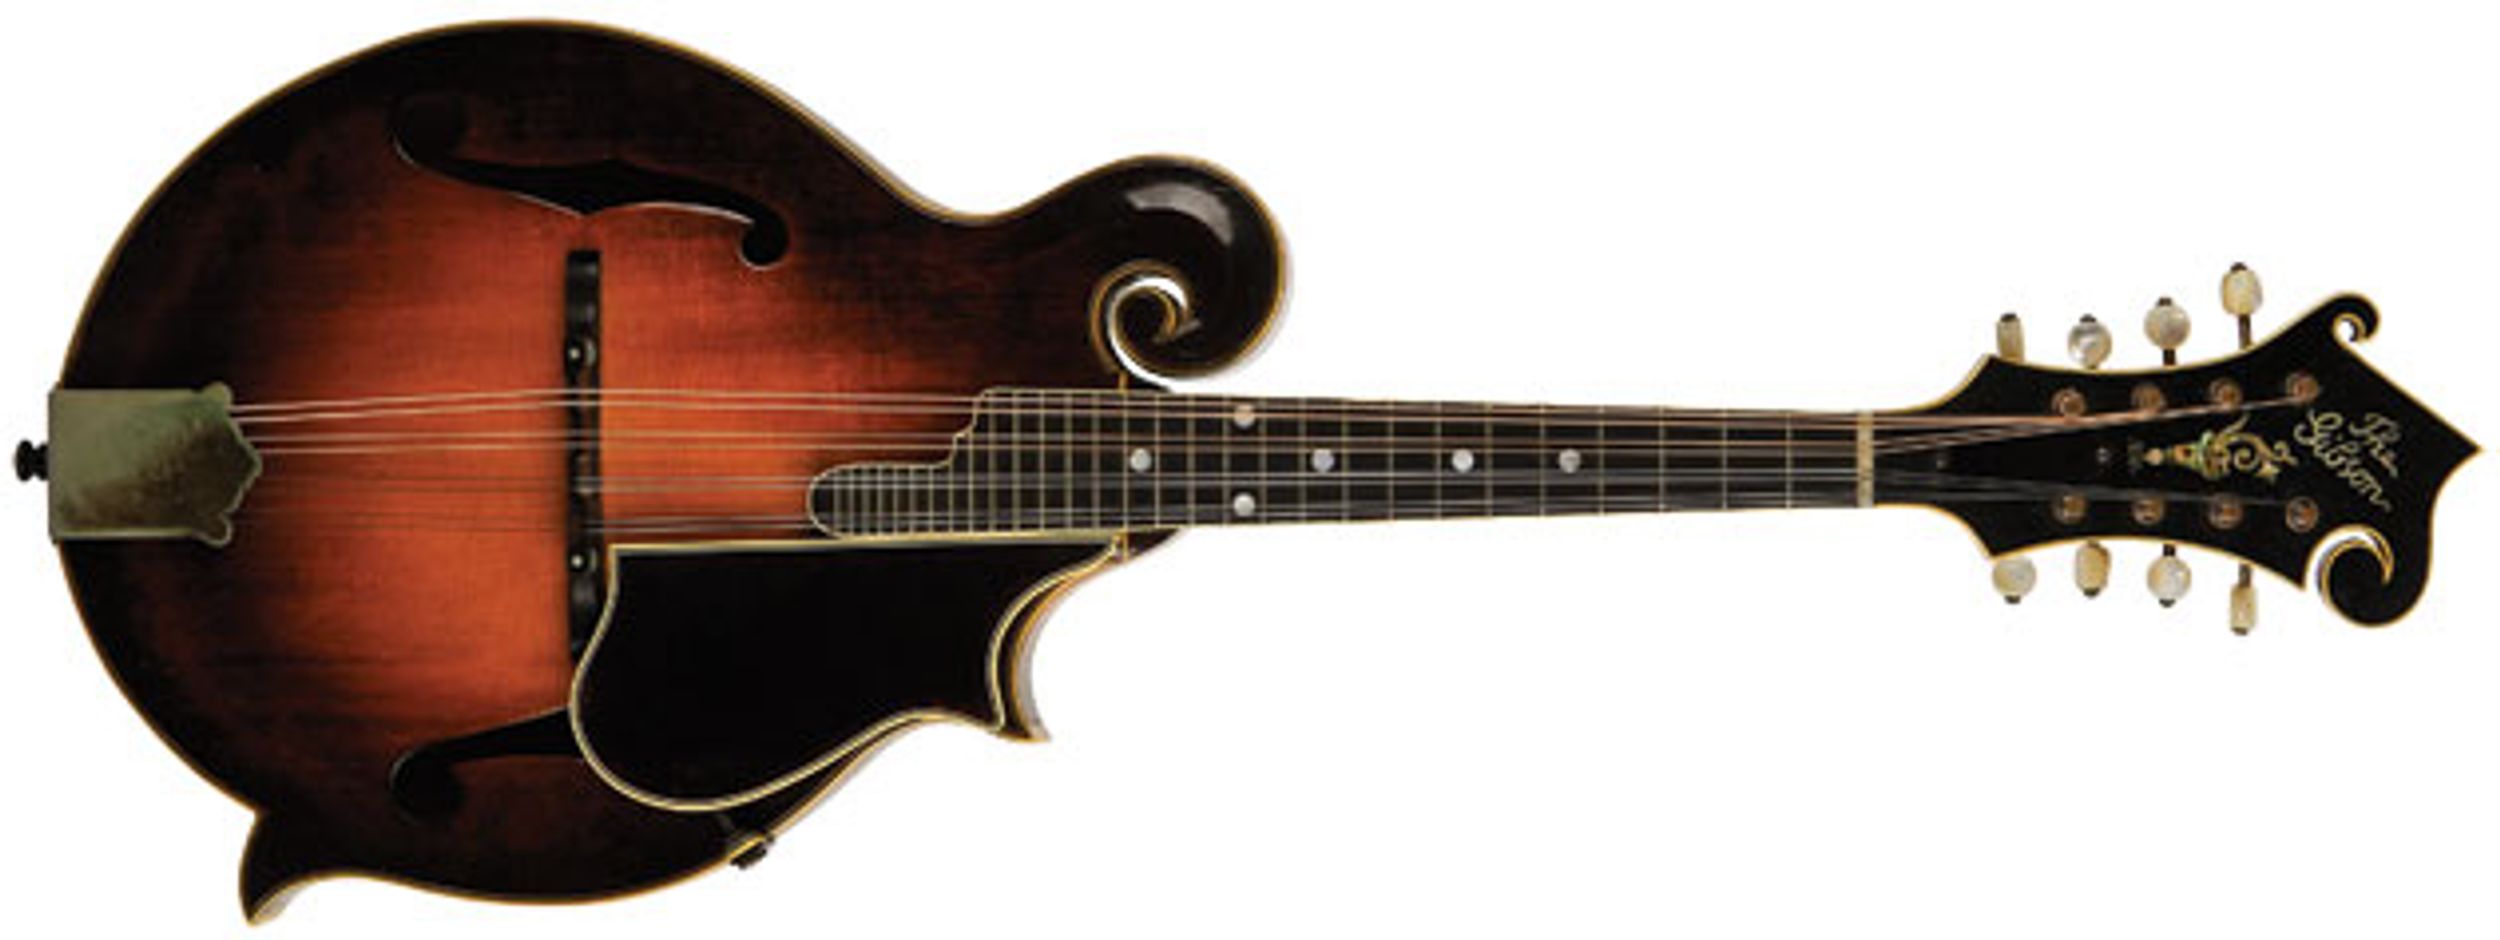 Vintage Vault: 1923 Gibson Master Model F-5 Mandolin